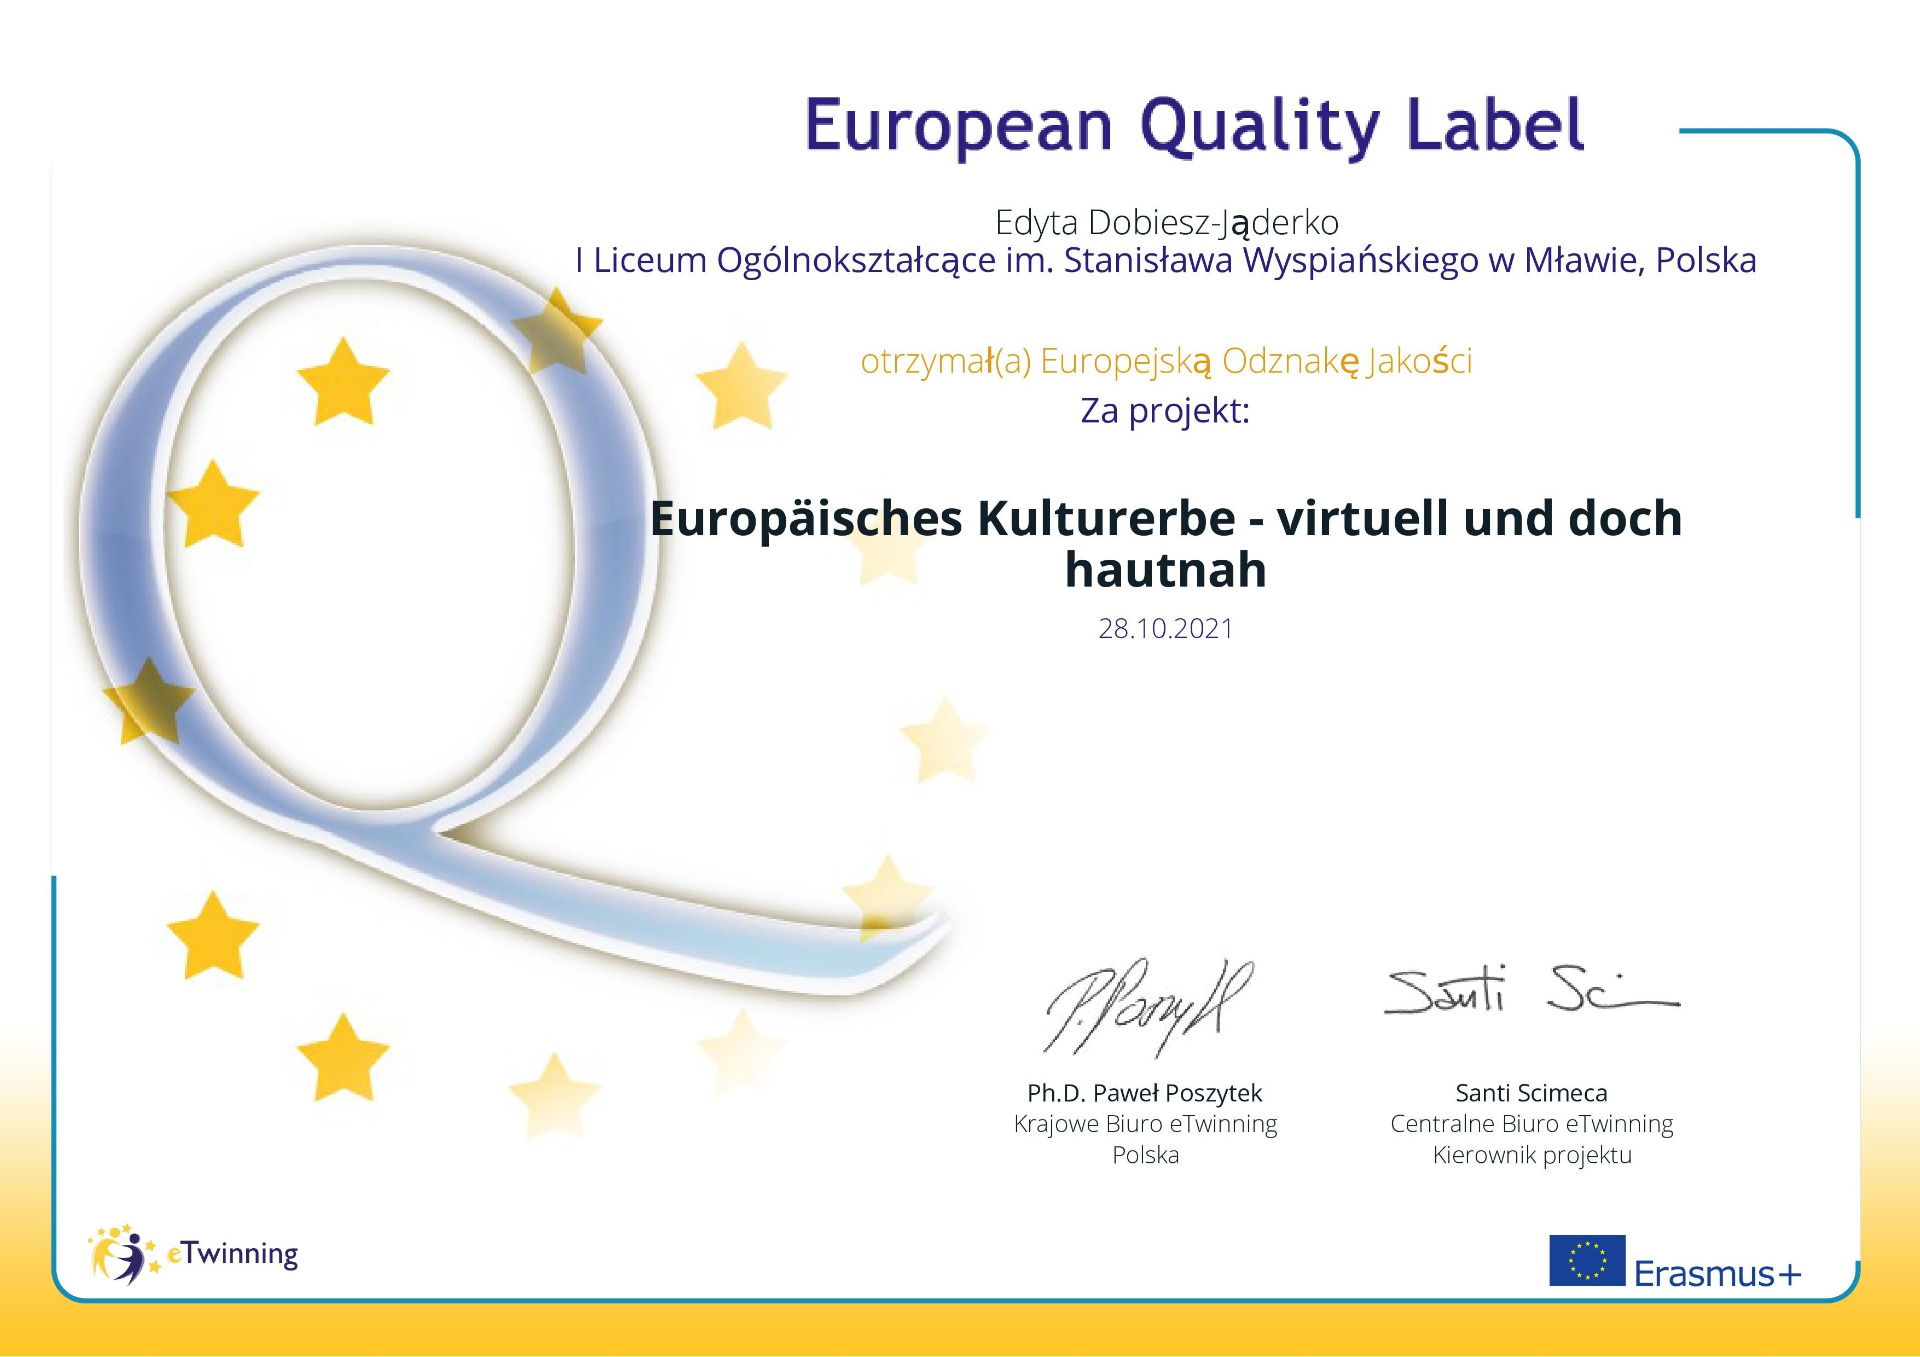 Nasza szkoła otrzymała Europejską Odznakę Jakości eTwinning za wspaniałą pracę w projekcie eTwinning "Europäisches Kulturerbe - virtuell und doch hautnah" - Obrazek 1